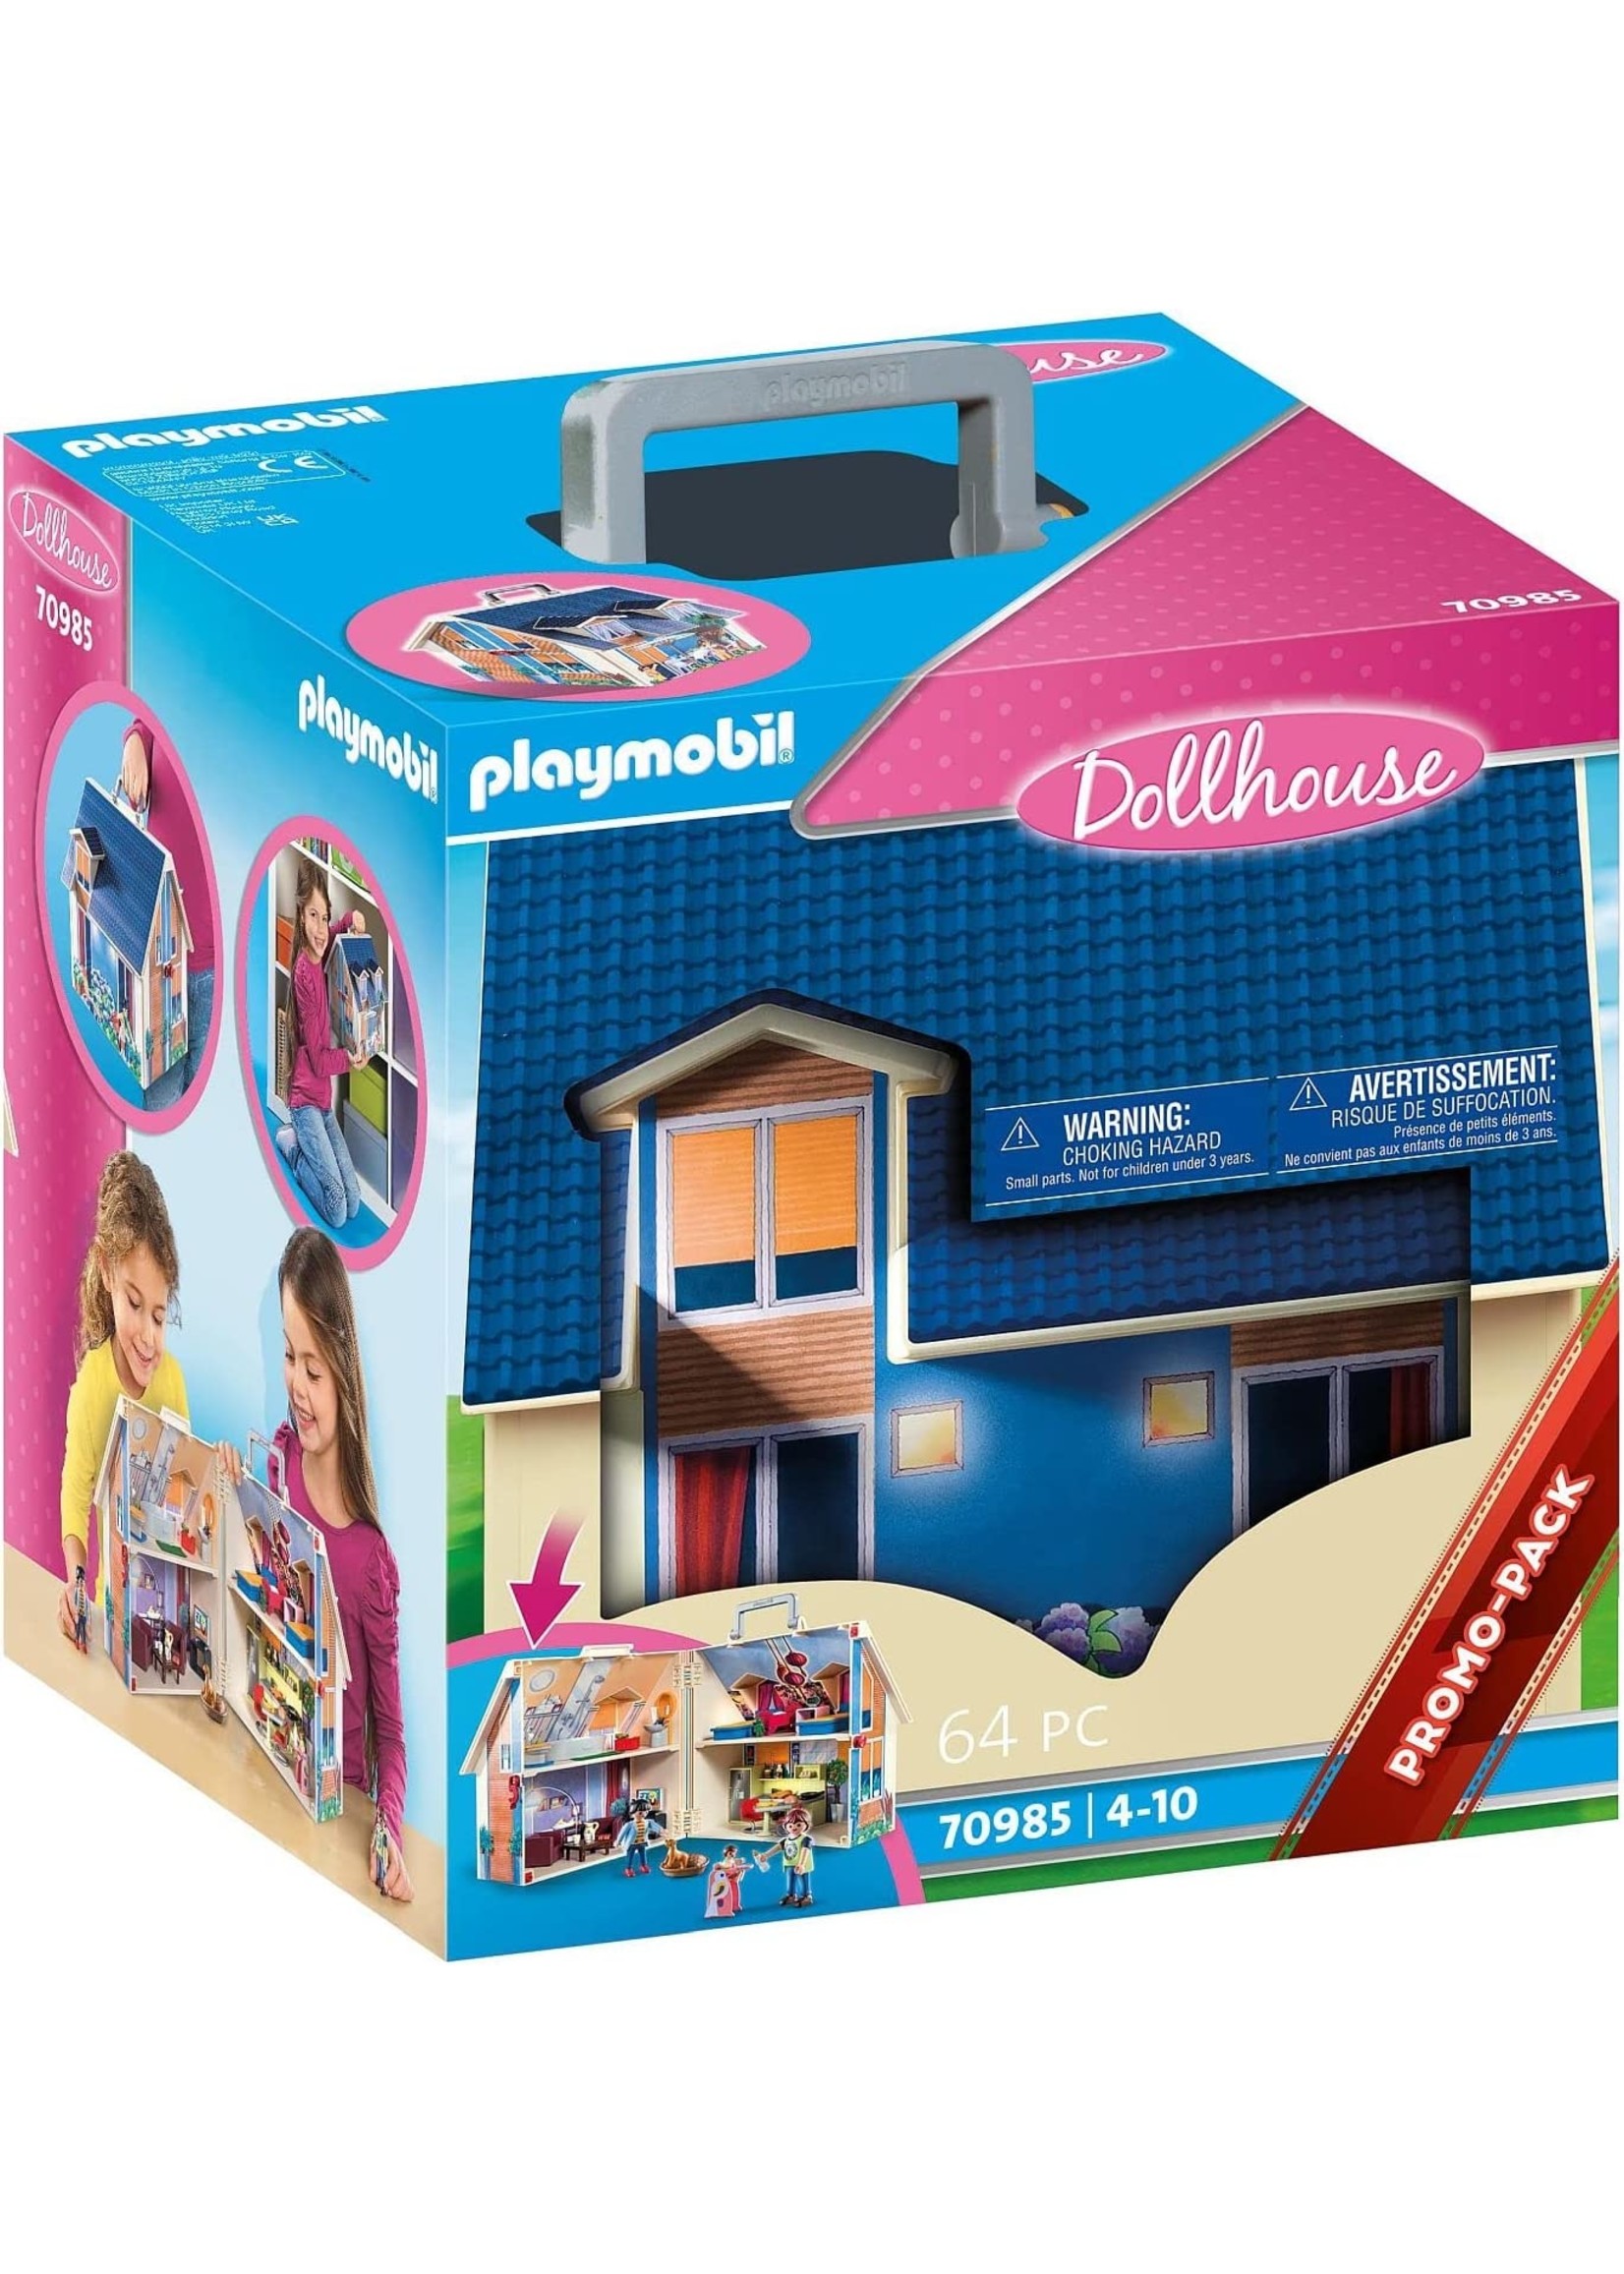 Playmobil 70985 - Take Along Dollhouse